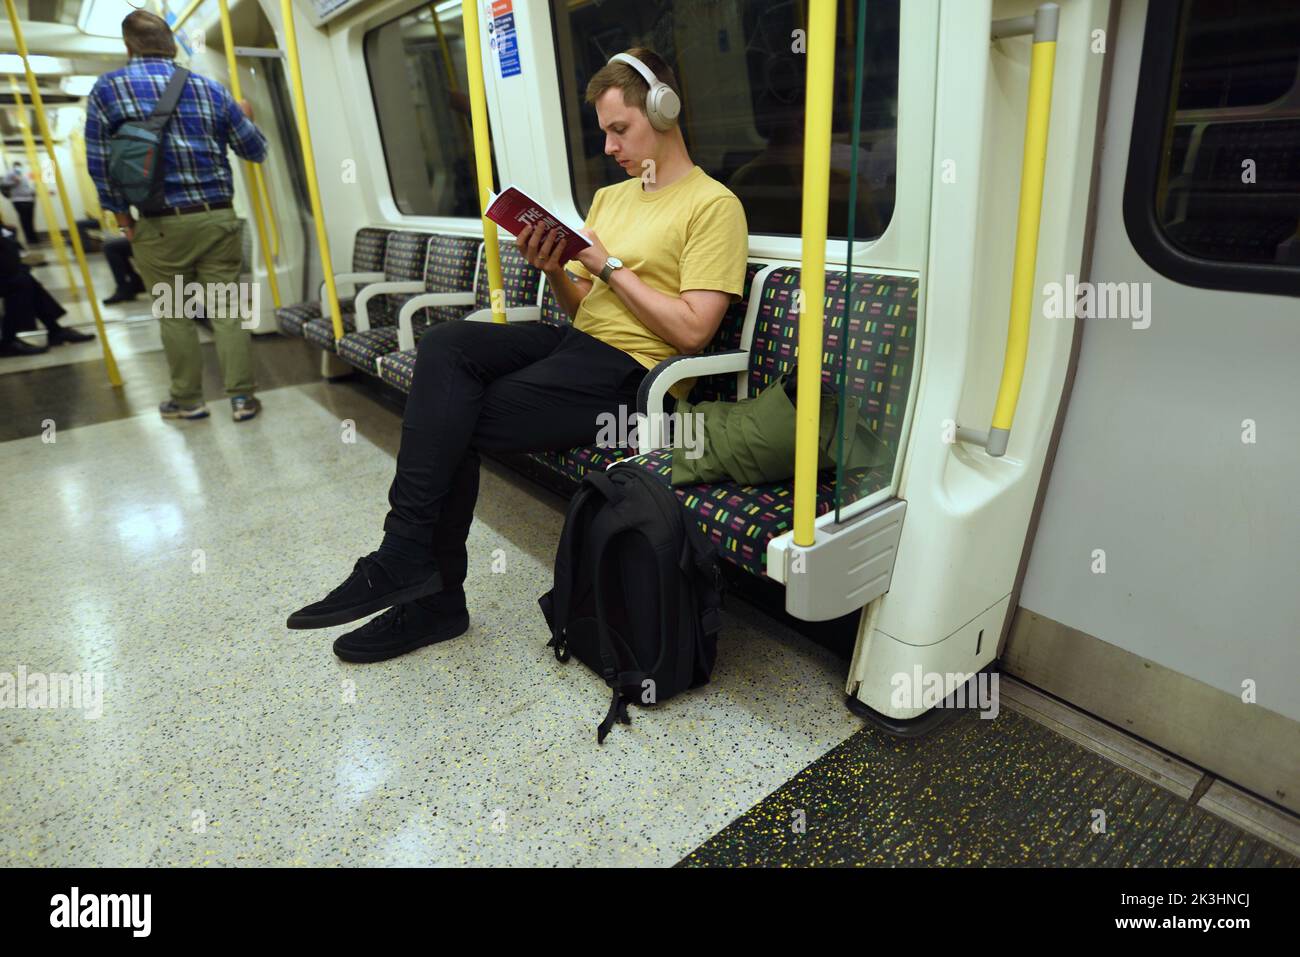 Londres, Inglaterra, Reino Unido. Hombre leyendo un libro en el tubo, usando auriculares Foto de stock